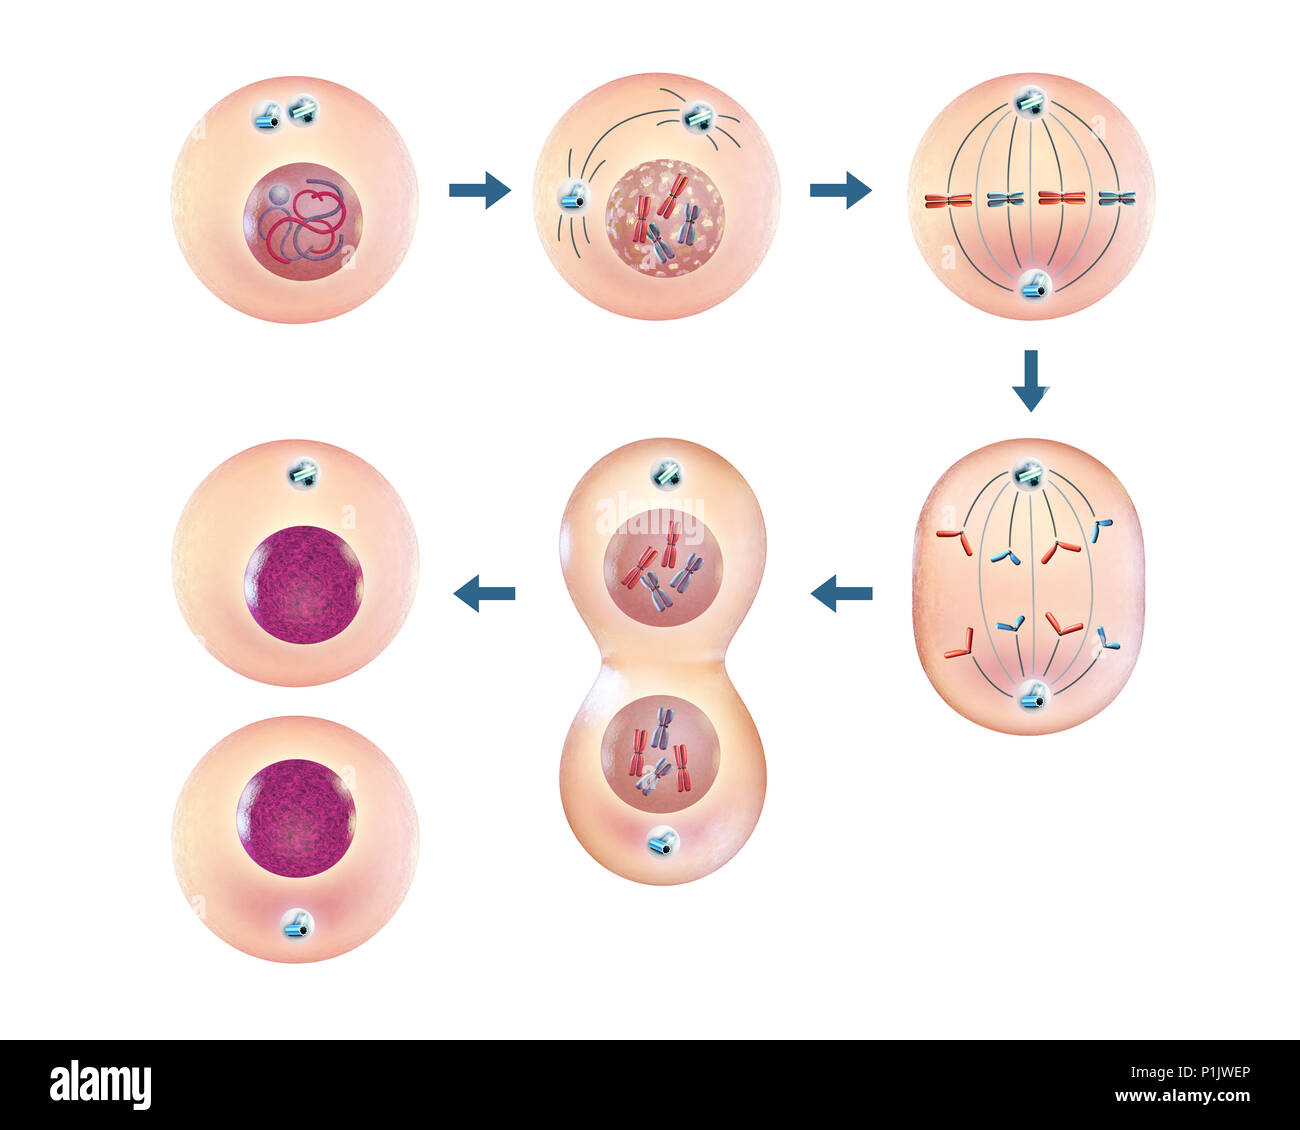 Les différentes étapes de la division cellulaire. 3D illustration. Banque D'Images